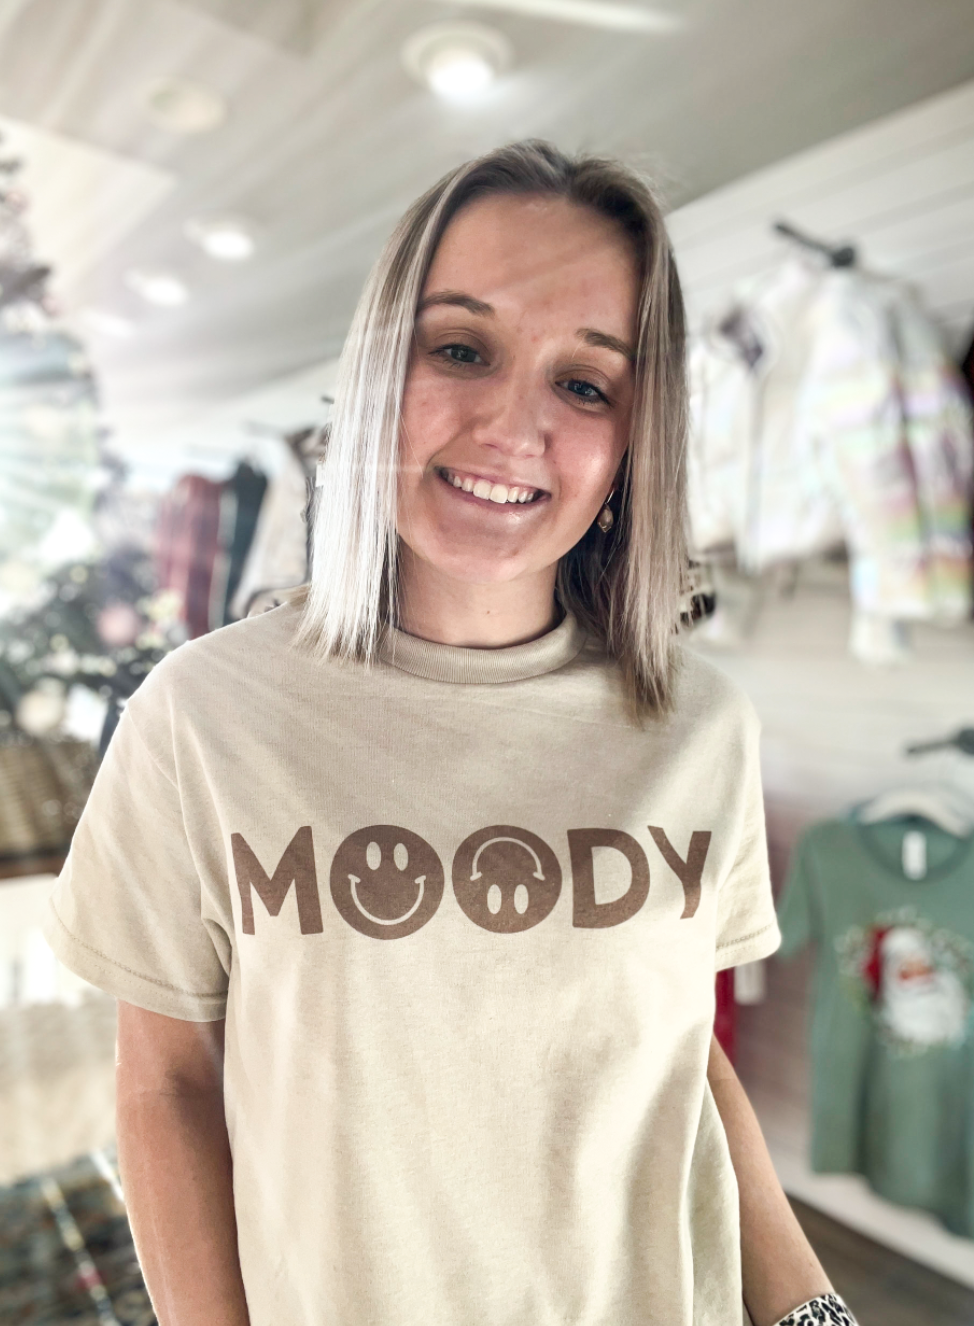 Moody Smiley Tee